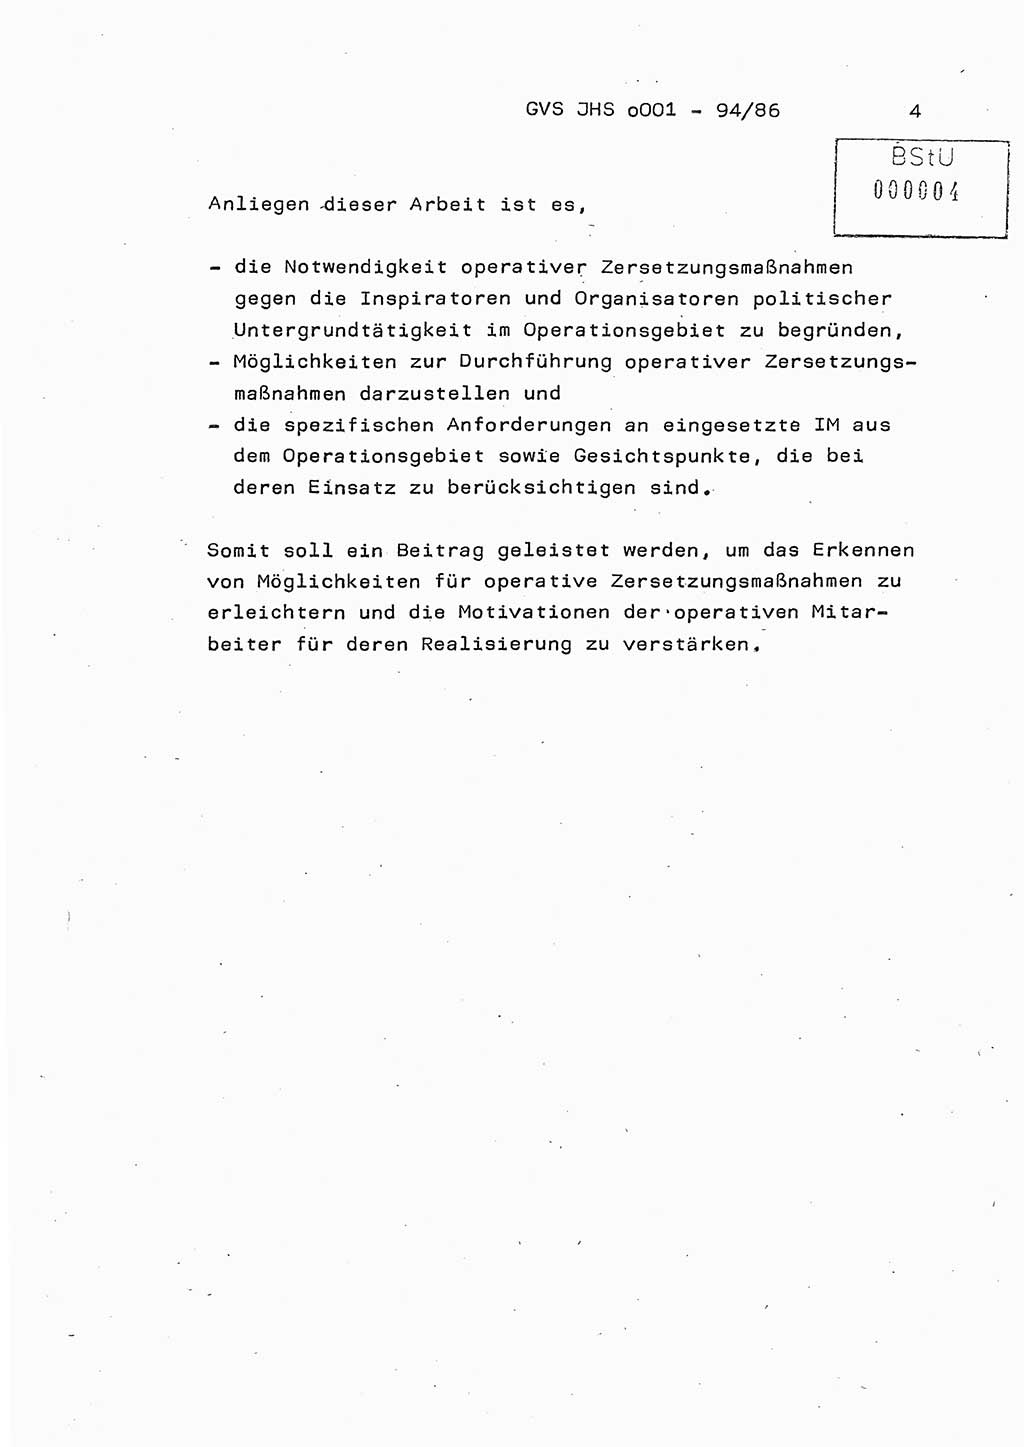 Diplomarbeit Oberleutnant Volkmar Pechmann (HA ⅩⅩ/5), Ministerium für Staatssicherheit (MfS) [Deutsche Demokratische Republik (DDR)], Juristische Hochschule (JHS), Geheime Verschlußsache (GVS) o001-94/86, Potsdam 1986, Blatt 4 (Dipl.-Arb. MfS DDR JHS GVS o001-94/86 1986, Bl. 4)